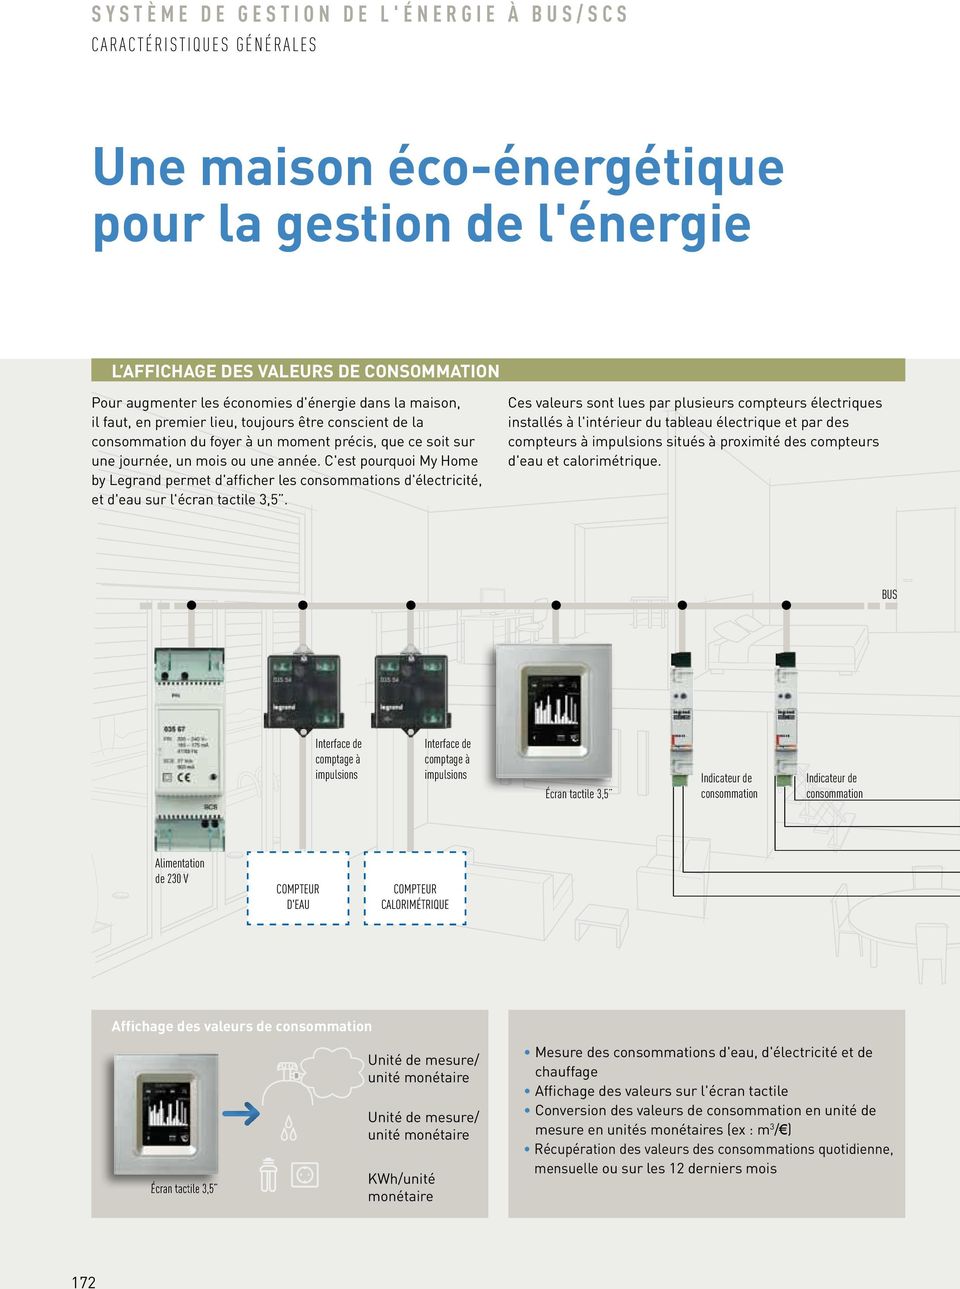 C'est pourquoi My Home by Legrand permet d'afficher les consommations d'électricité, et d'eau sur l'écran tactile 3,5.